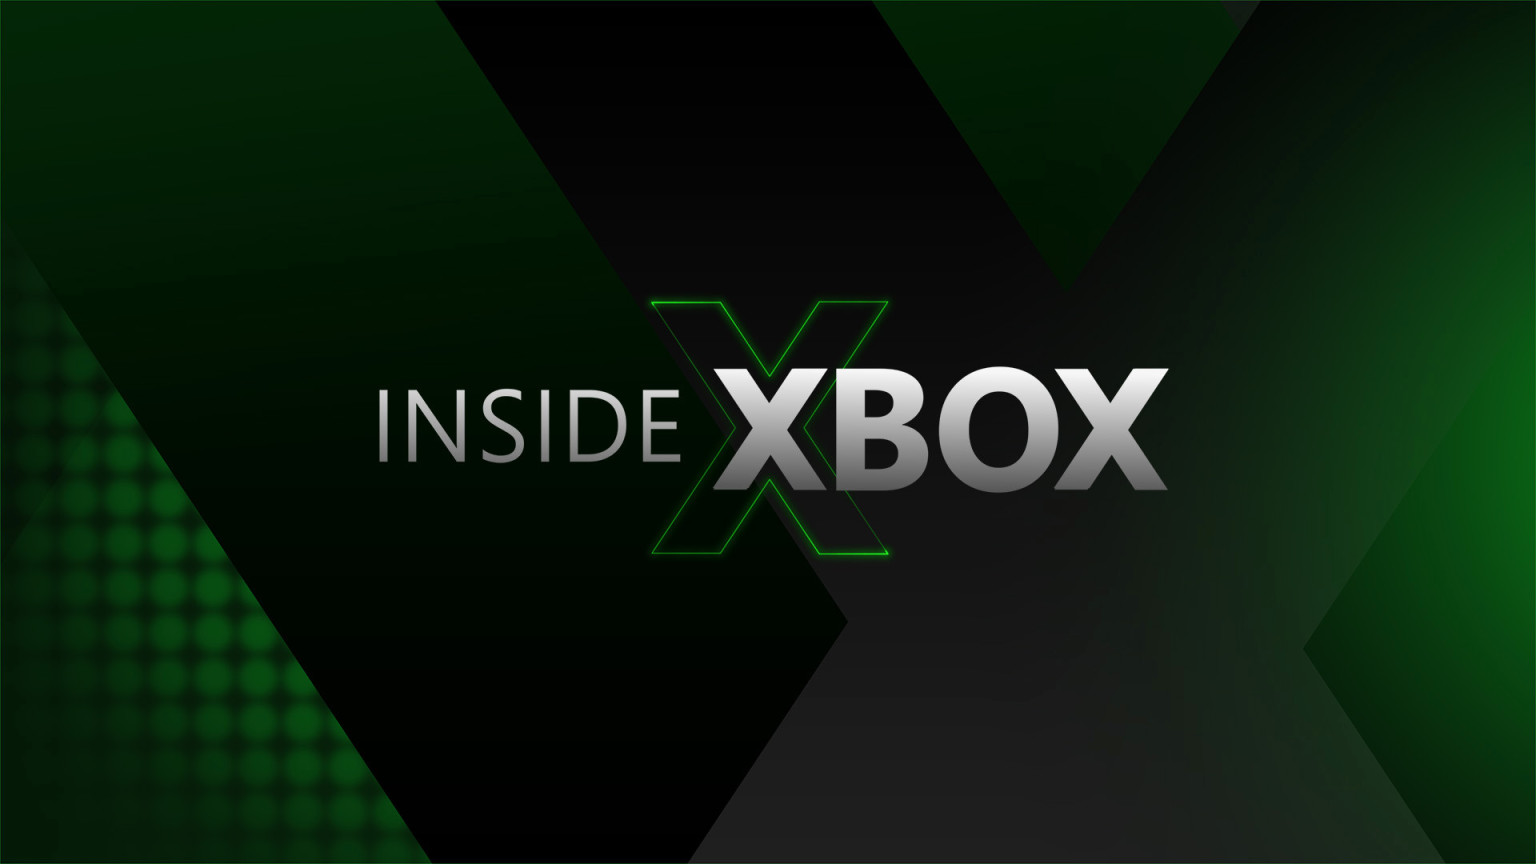 Résumé Inside Xbox : Assassin's Creed Valhalla, DiRT 5 et tous les jeux Xbox Series X